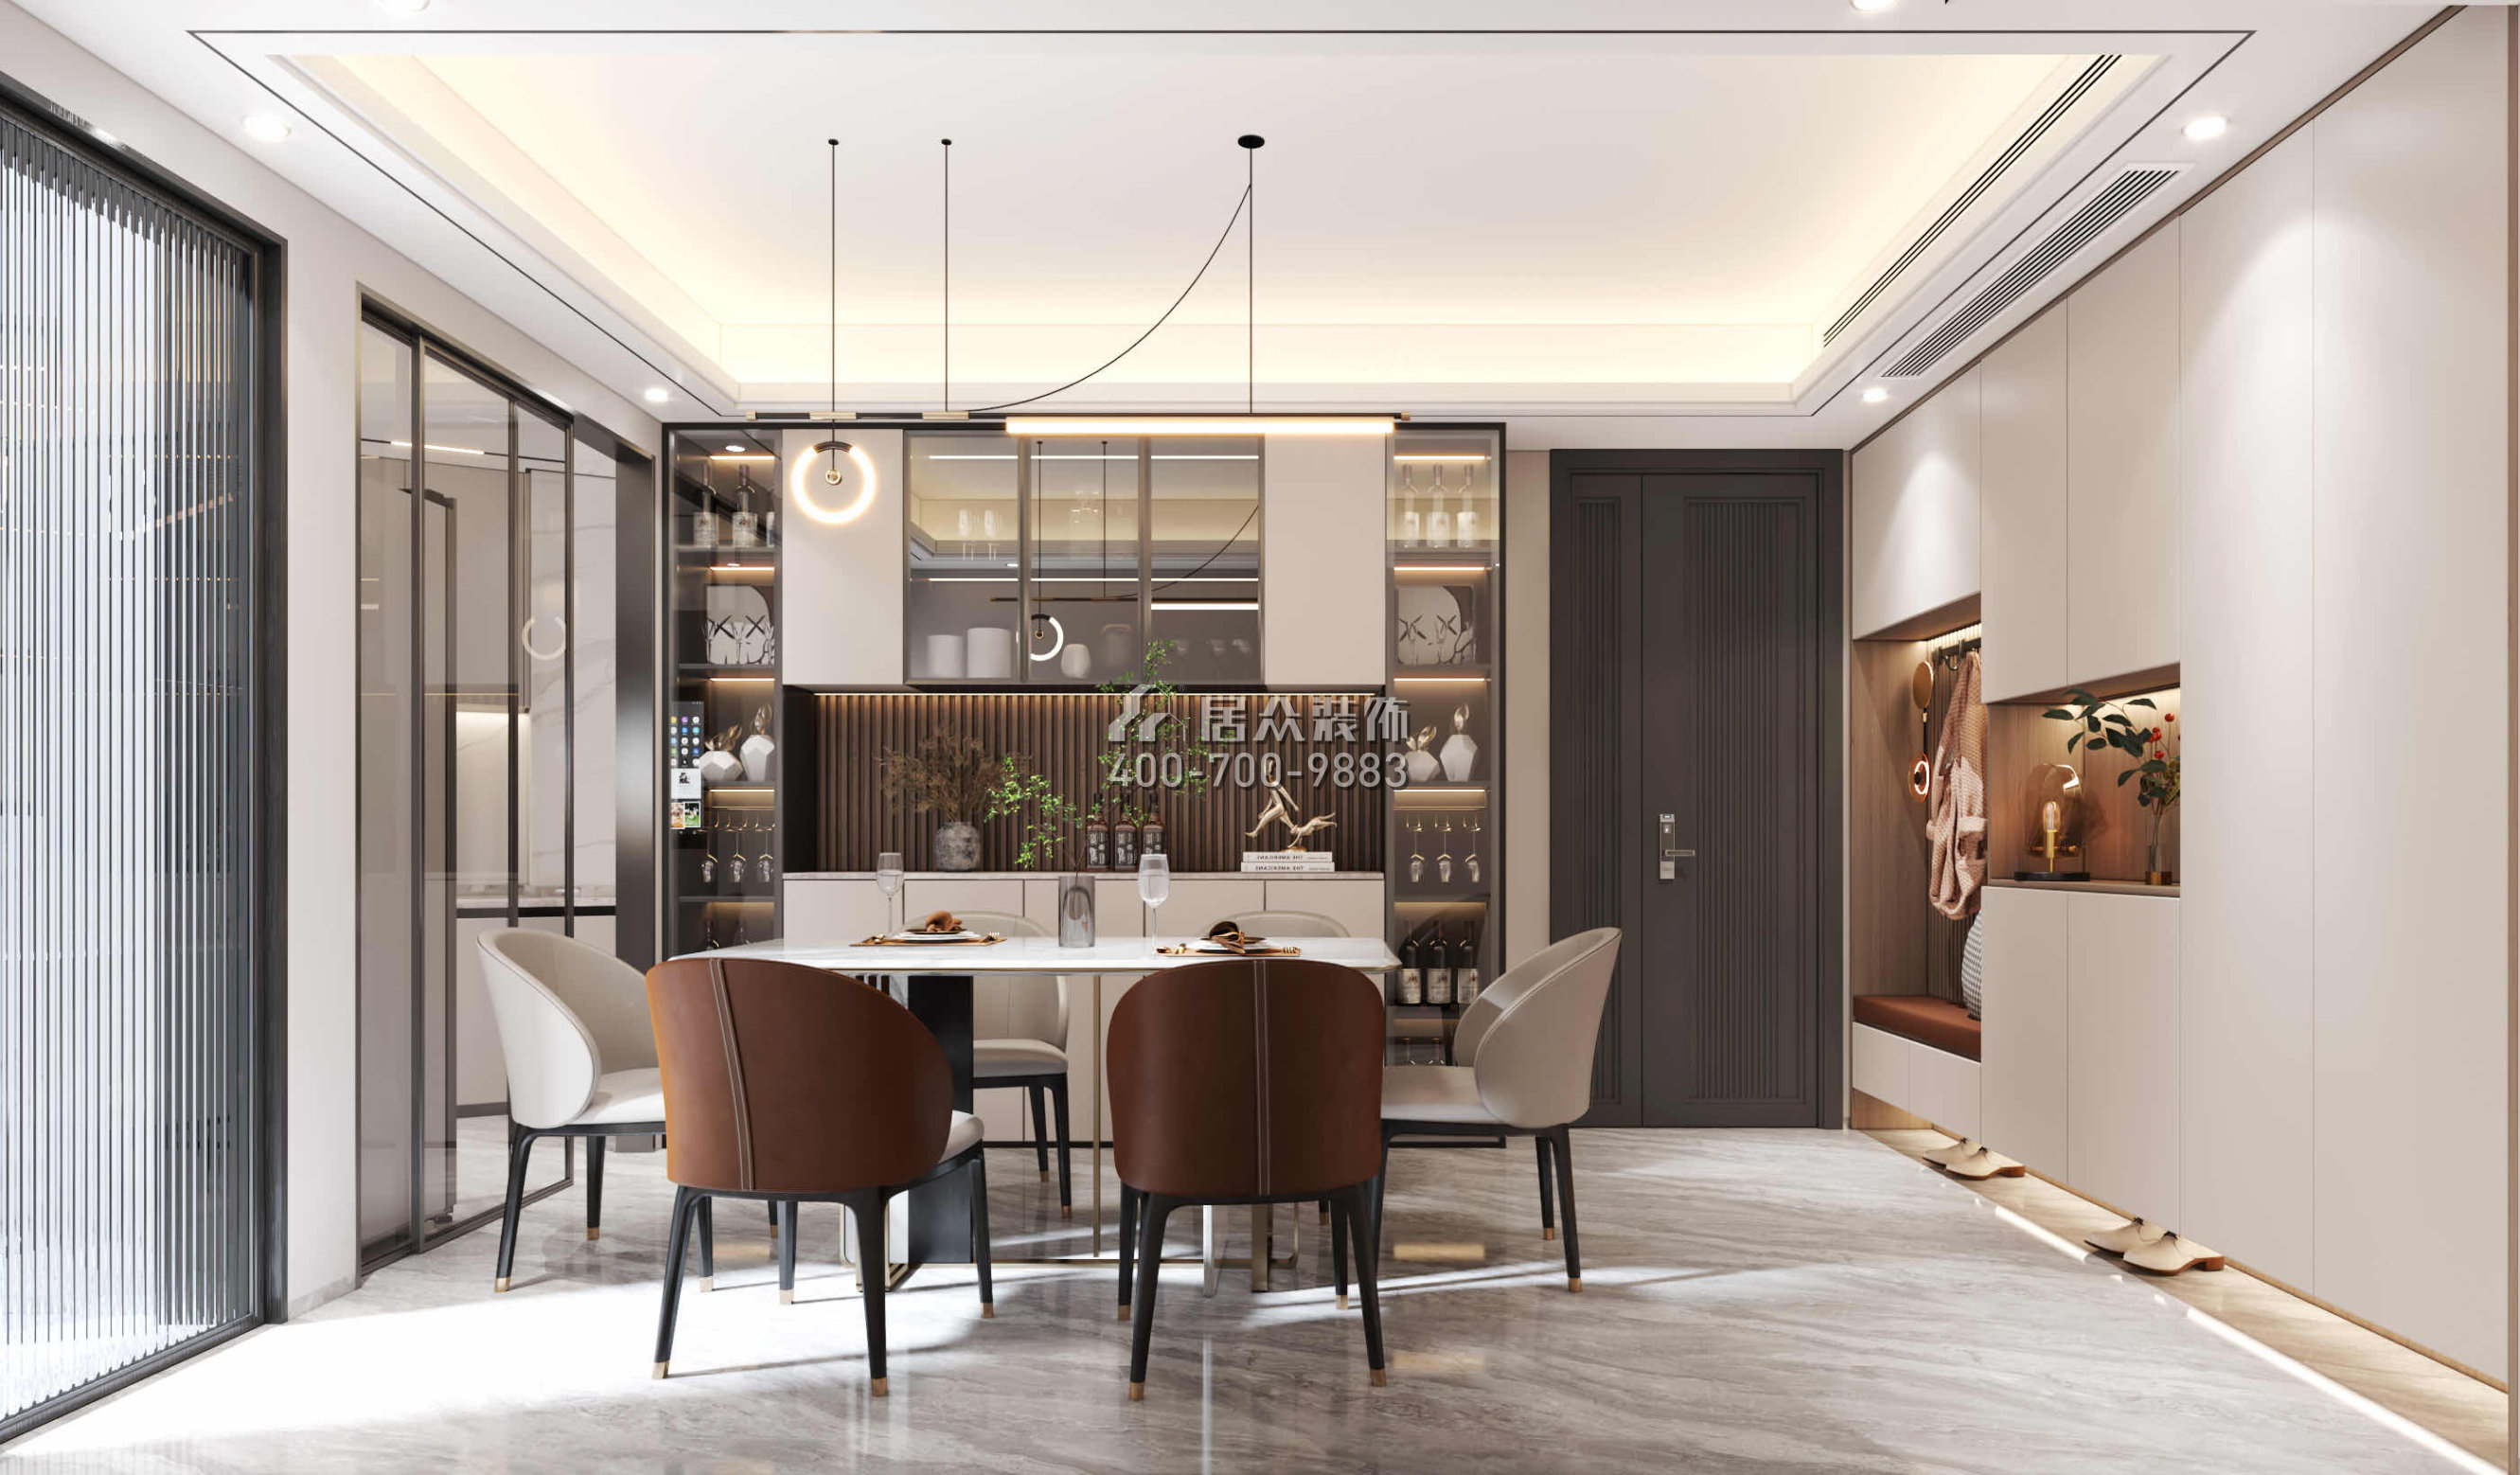 碧海紅樹園120平方米現代簡約風格平層戶型餐廳裝修效果圖